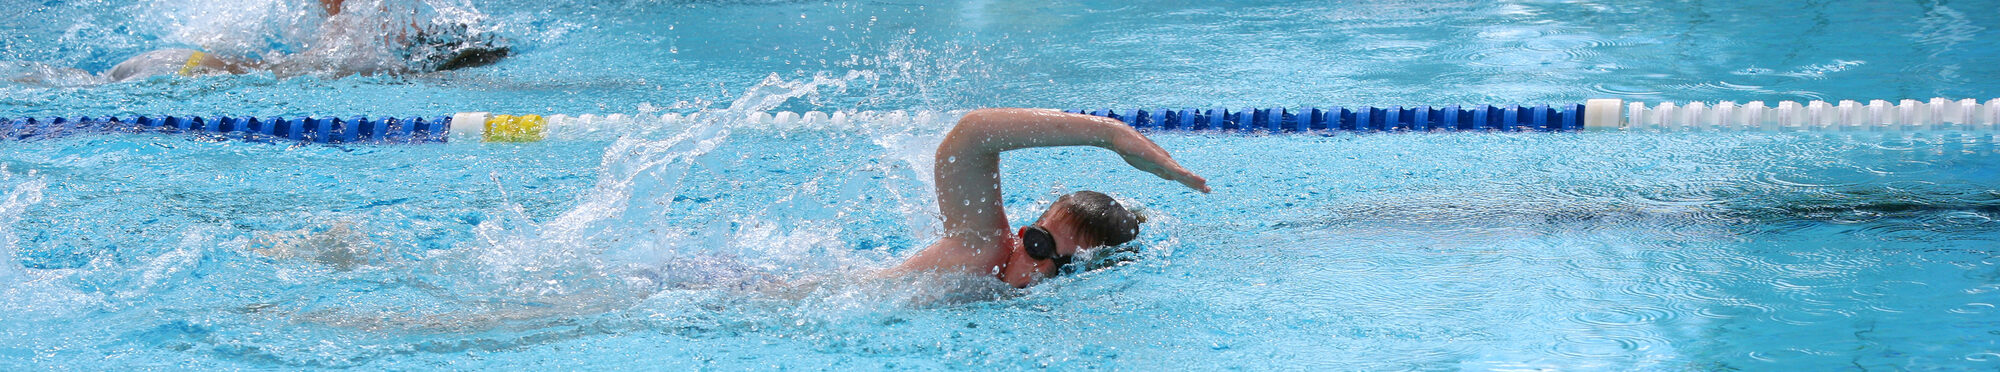 Motivbild Schwimmen [Foto: ©Colibri - stock.adobe.com]